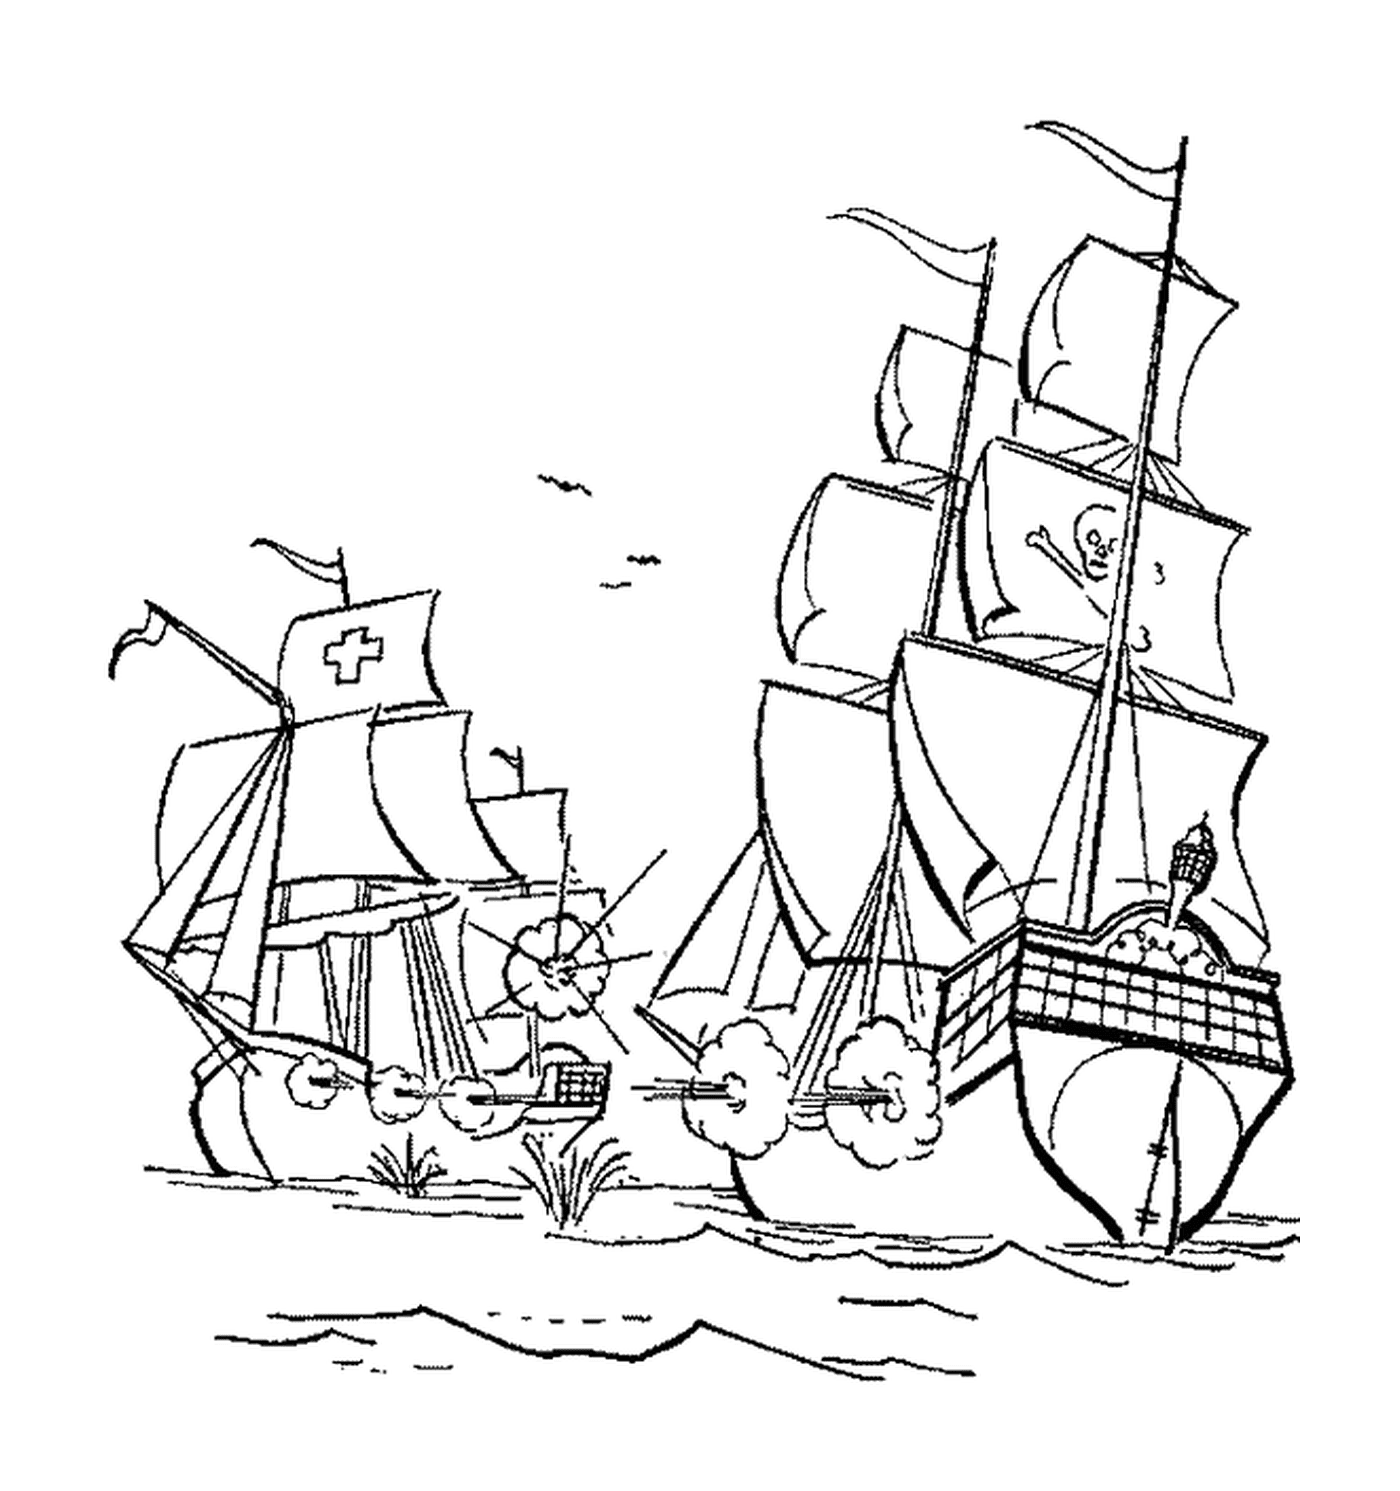  La nave pirata attacca una nave cargo 